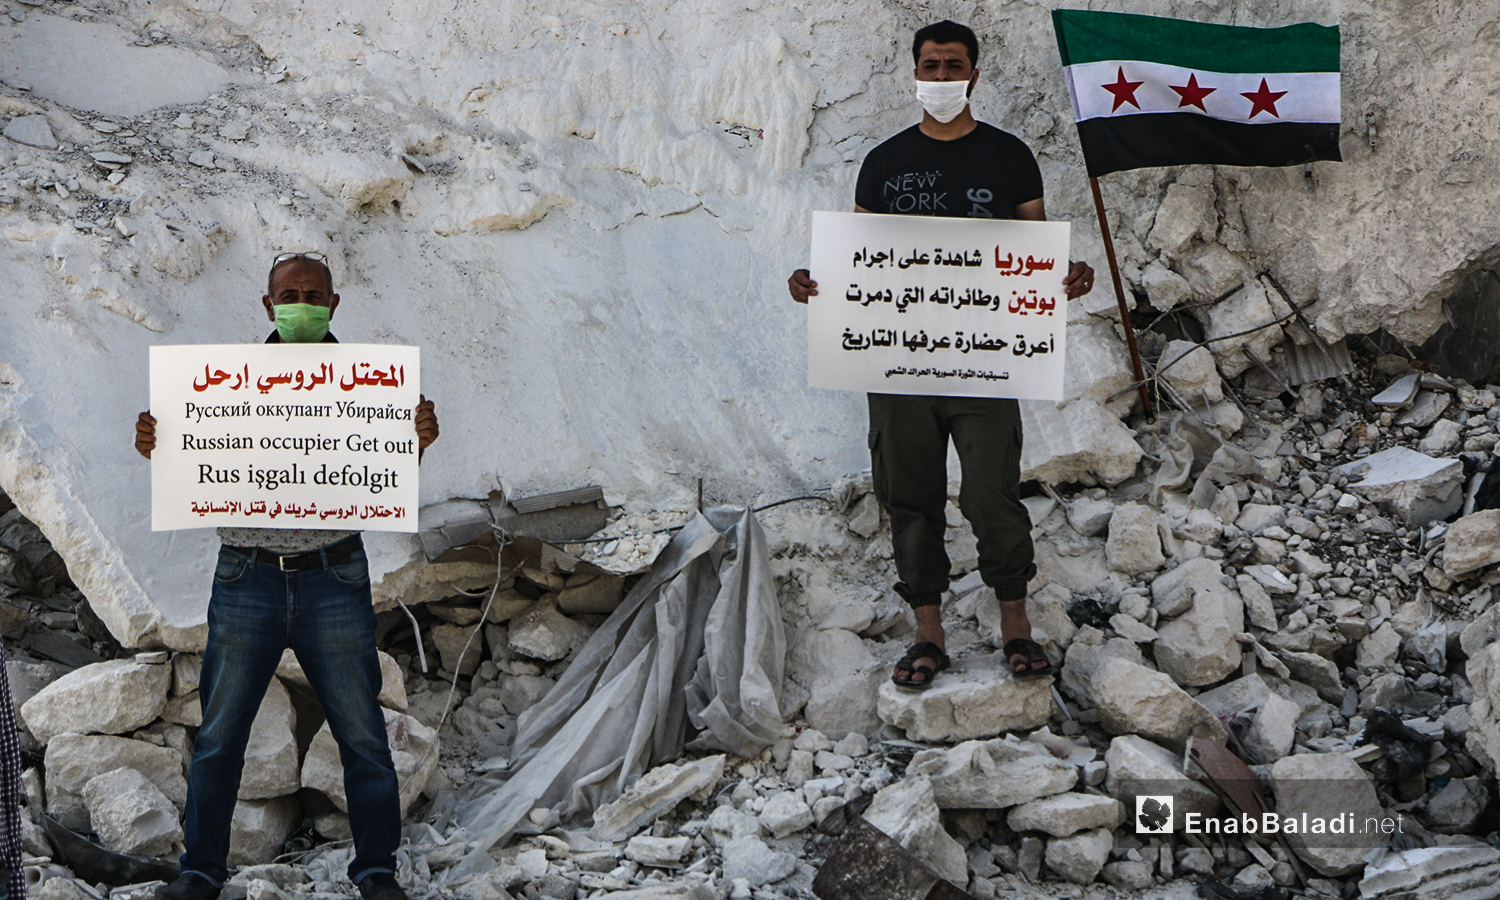 وقفة احتجاجية للذكرى الخامسة لتدخل بسوريا في مدينة إدلب - 30 أيلول 2020 (عنب بلدي / أنس الخولي)